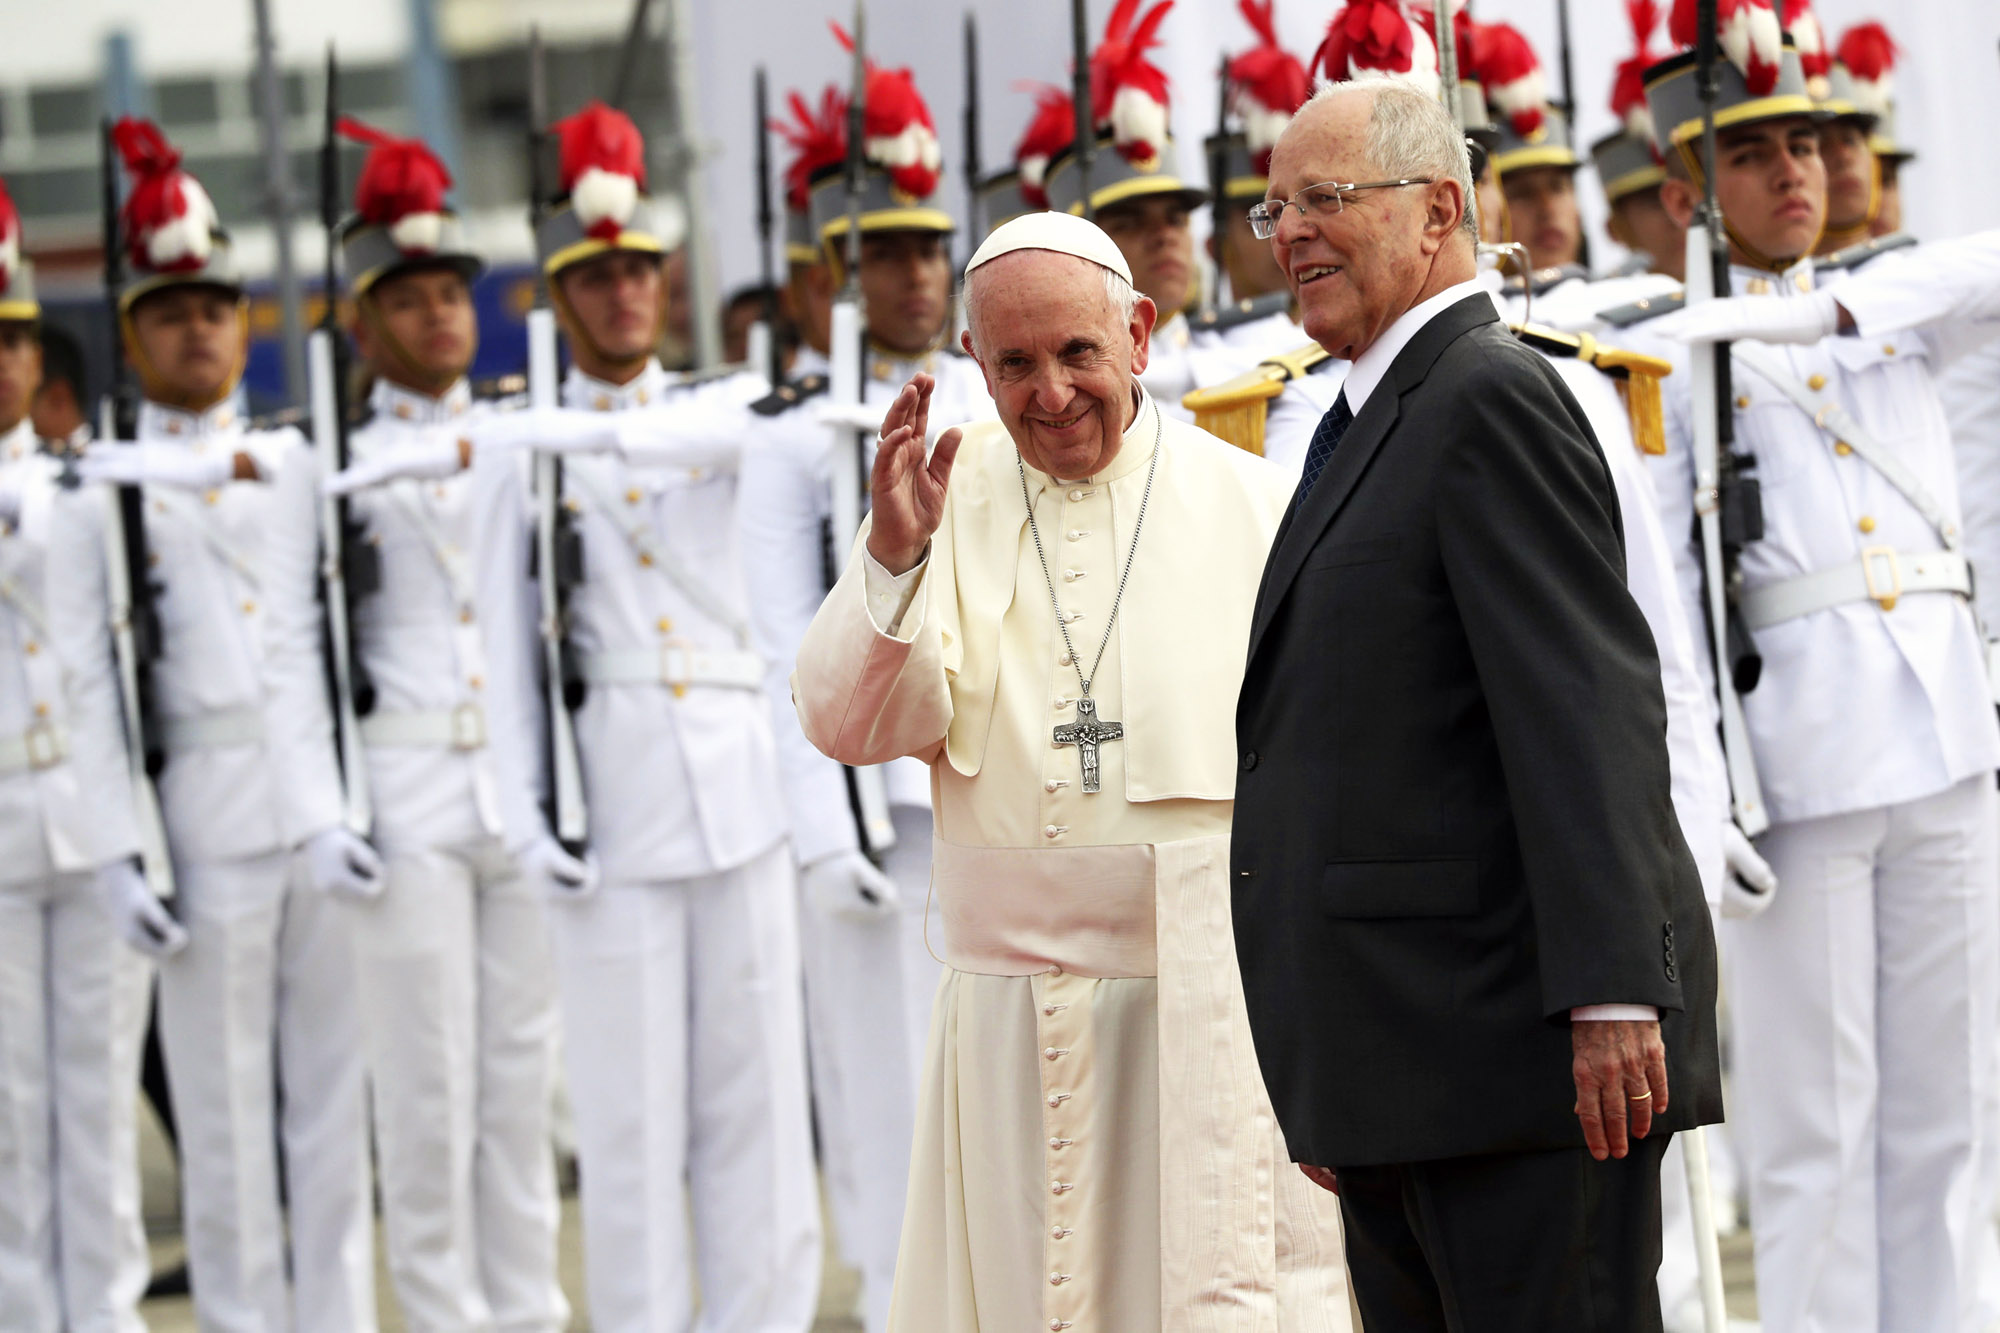 Recibimiento “apoteósico” de Perú al Papa Francisco